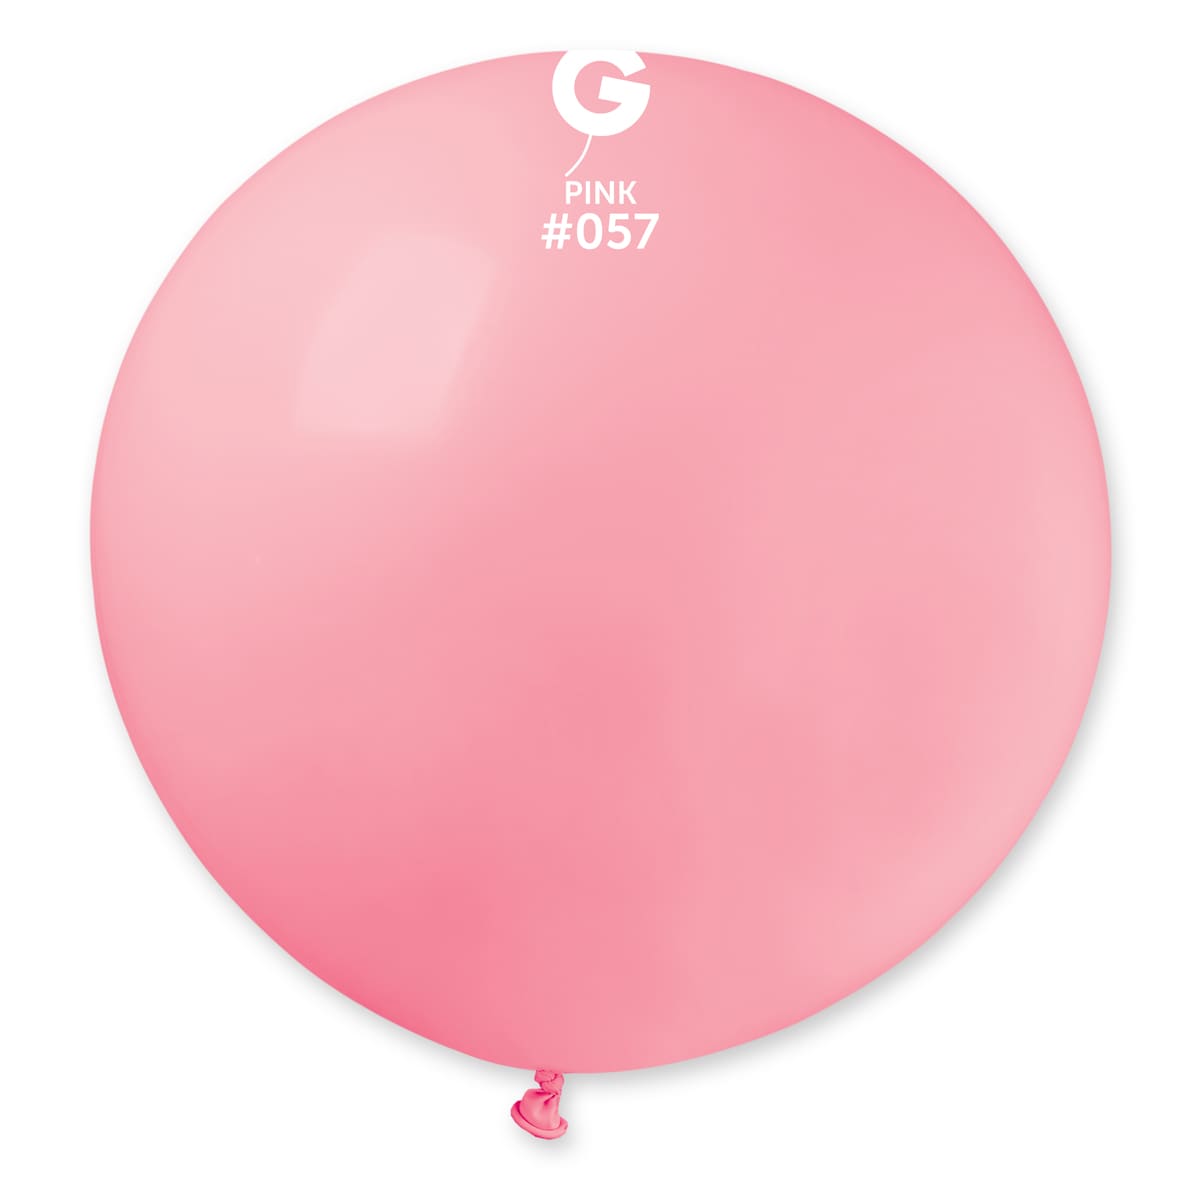 Standard Pink #057 31in – 1 piece